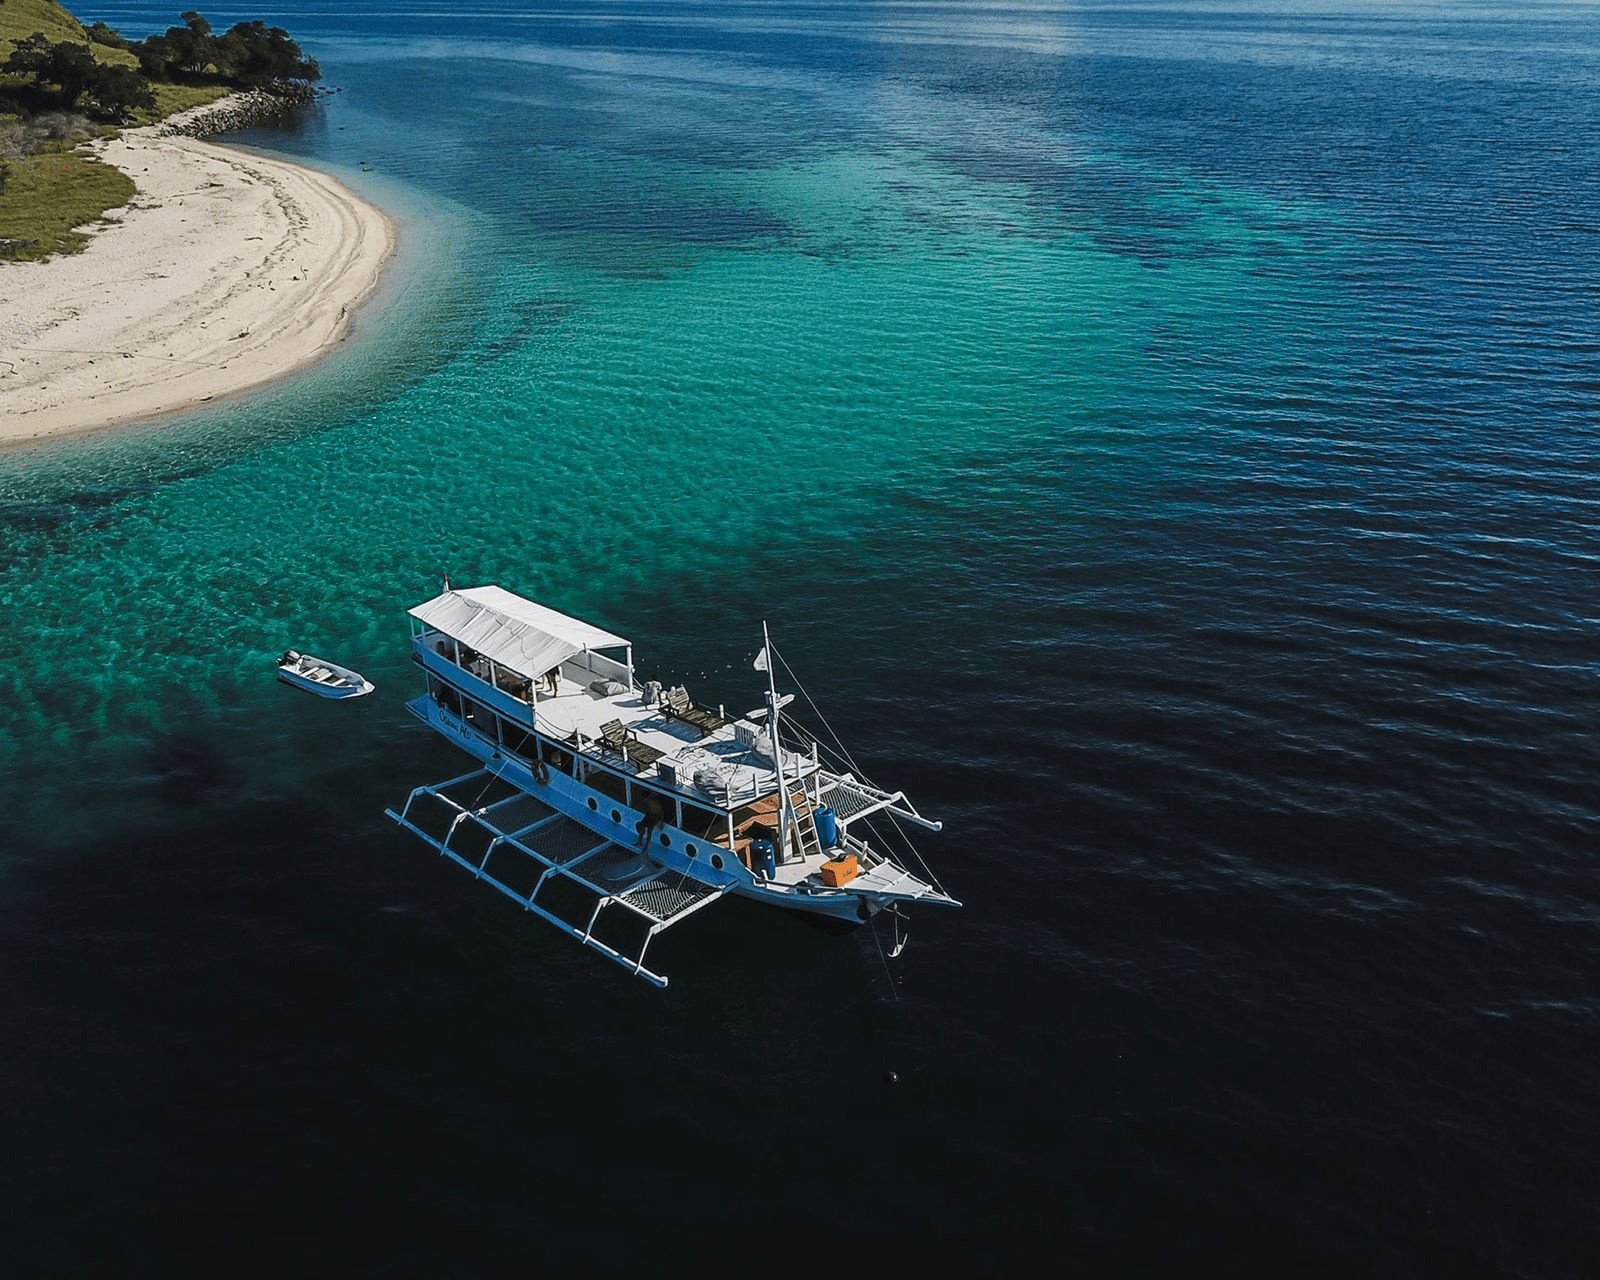 Sewa Kapal Phinisi Osiana Alo Private Trip Labuan Bajo - Tour - Harga - 2022